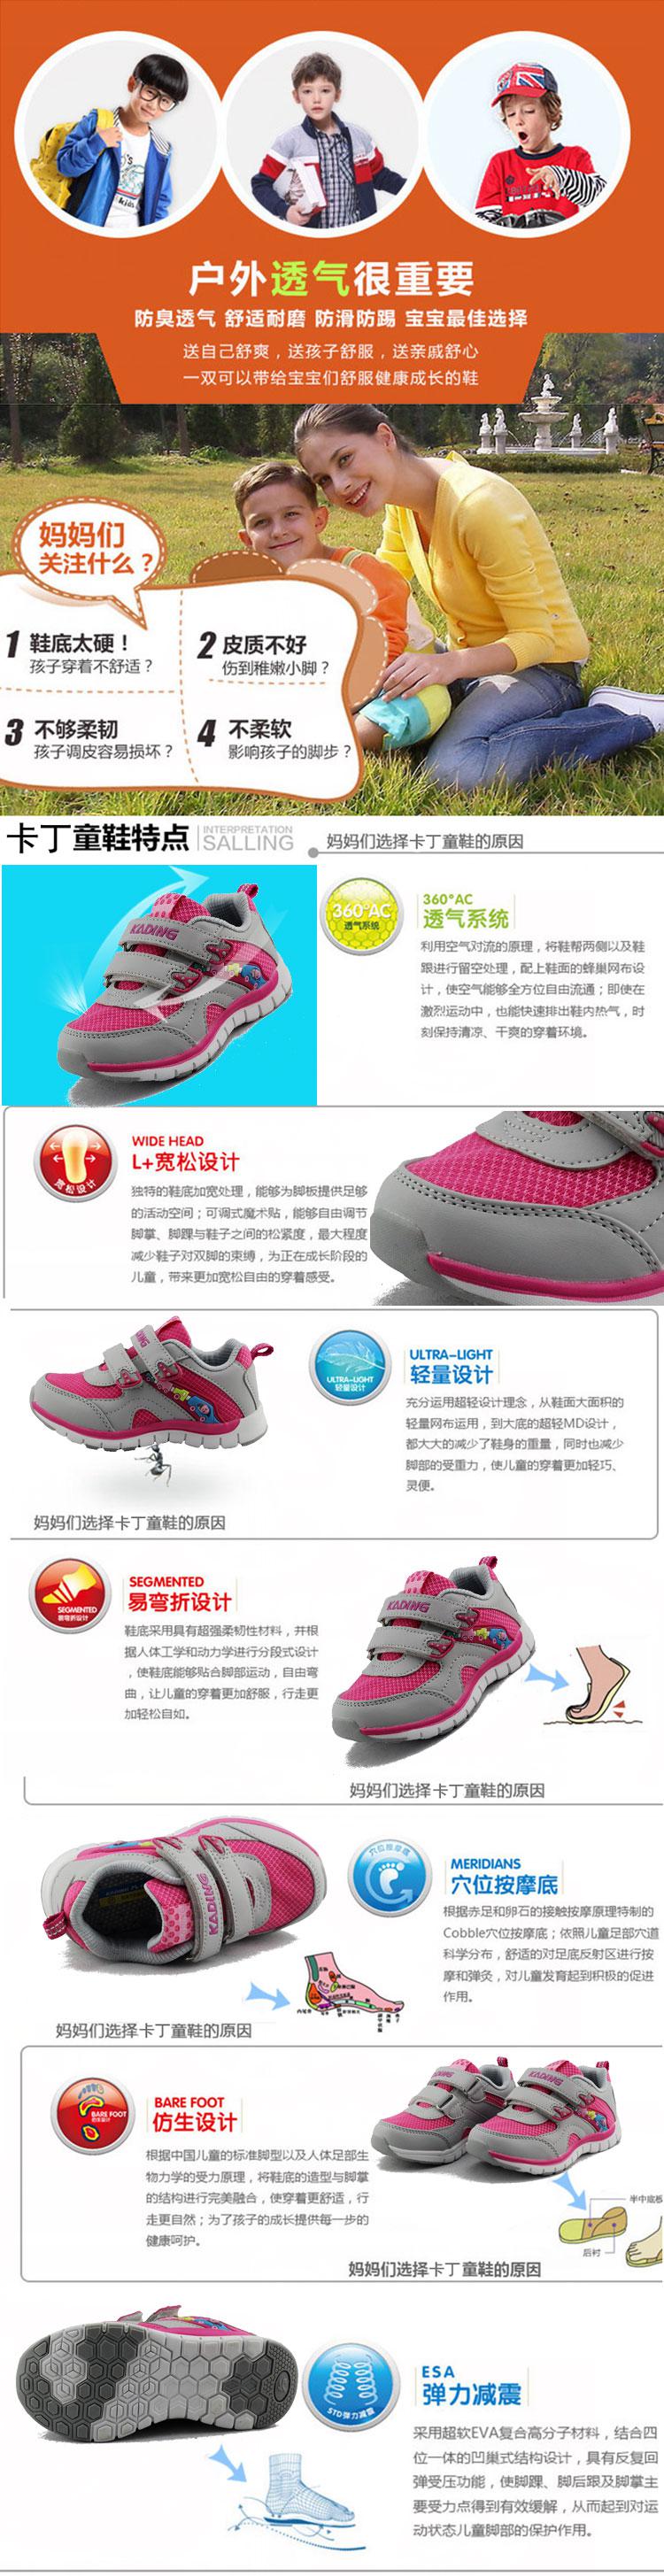 卡丁童鞋 女童鞋2014秋款小童网面透气运动鞋跑步鞋8240916